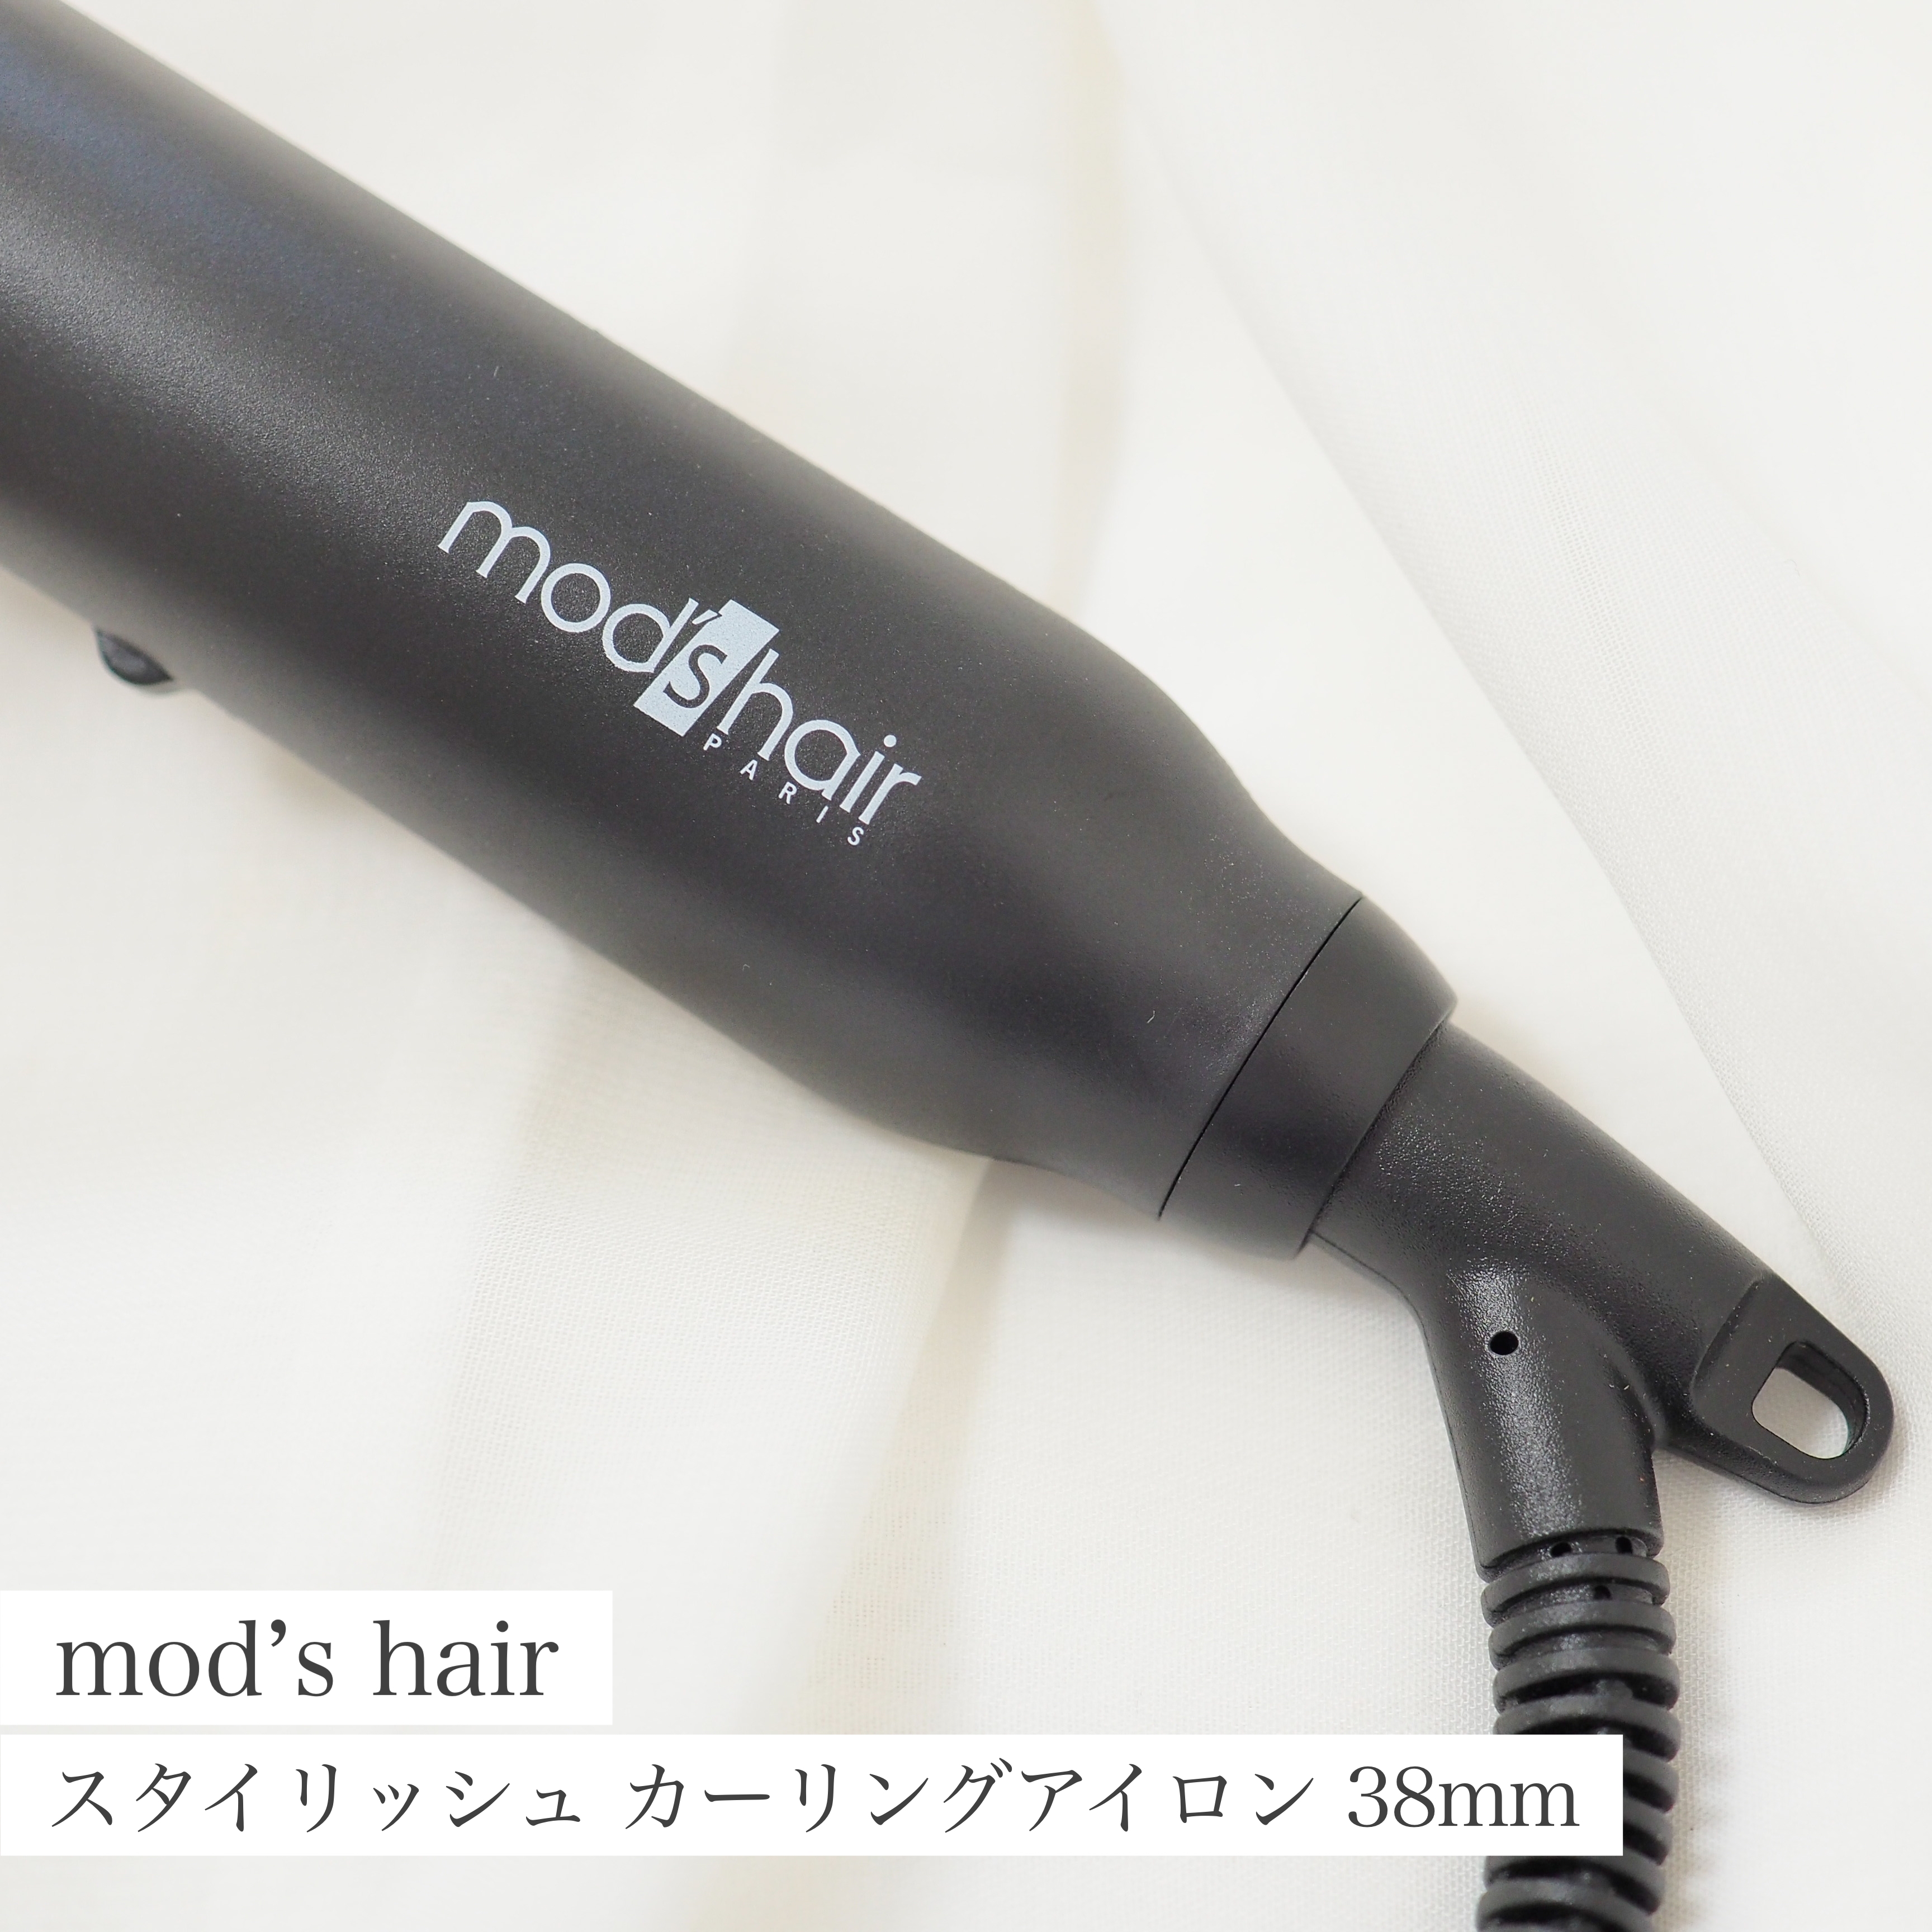 mod’s hair(モッズ・ヘア) スタイリッシュ カーリングアイロンの良い点・メリットに関するaquaさんの口コミ画像1